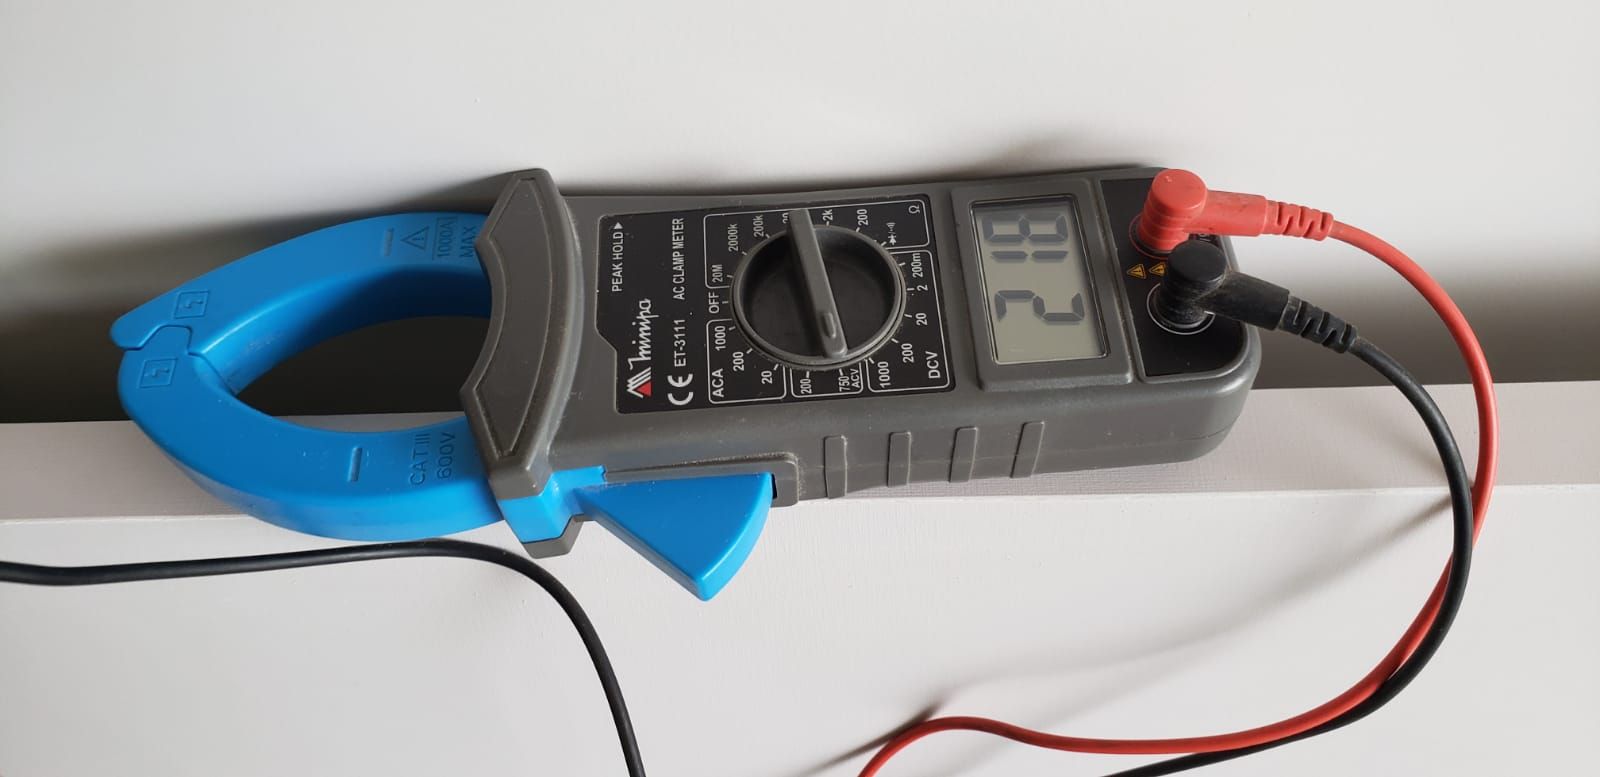 Misurazione della tensione tramite tester. multimetro digitale nel foro  della presa elettrica. servizio elettricista.